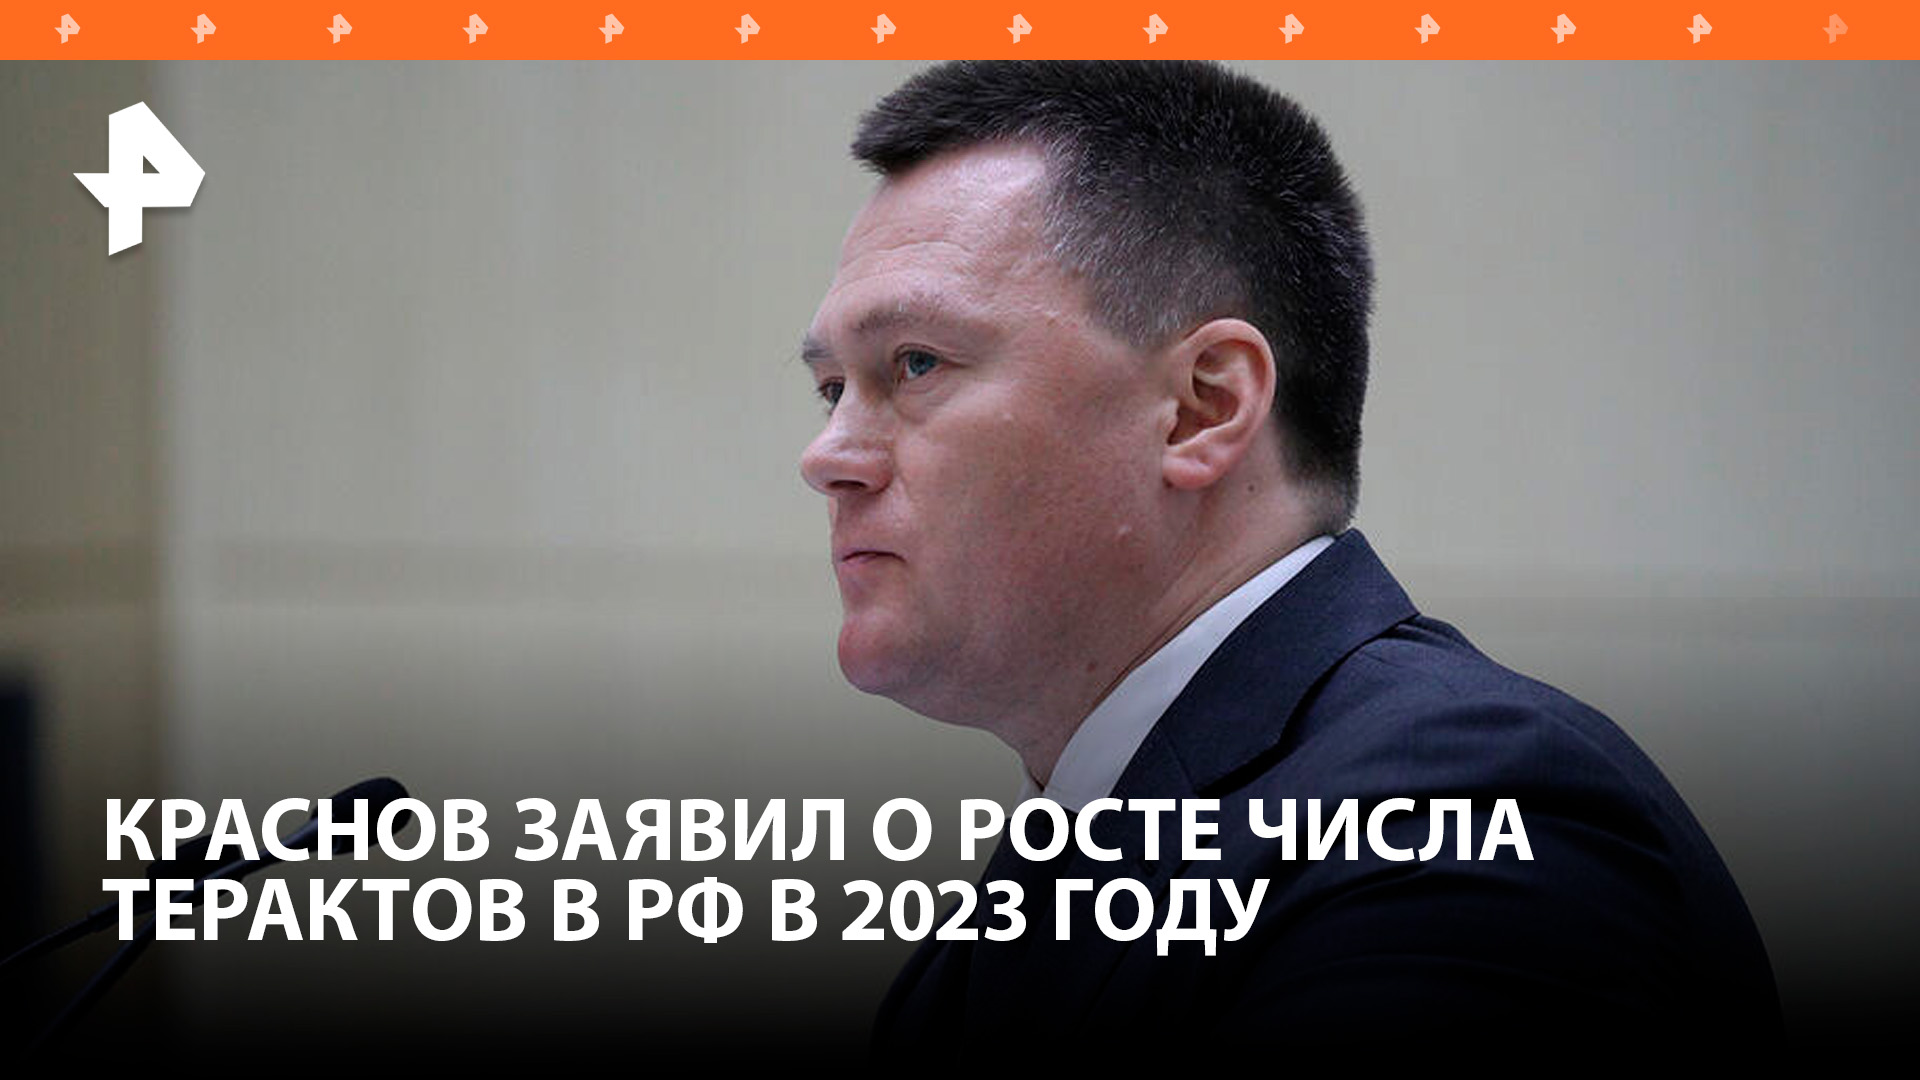 Краснов заявил о росте числа терактов в РФ в 2023 году